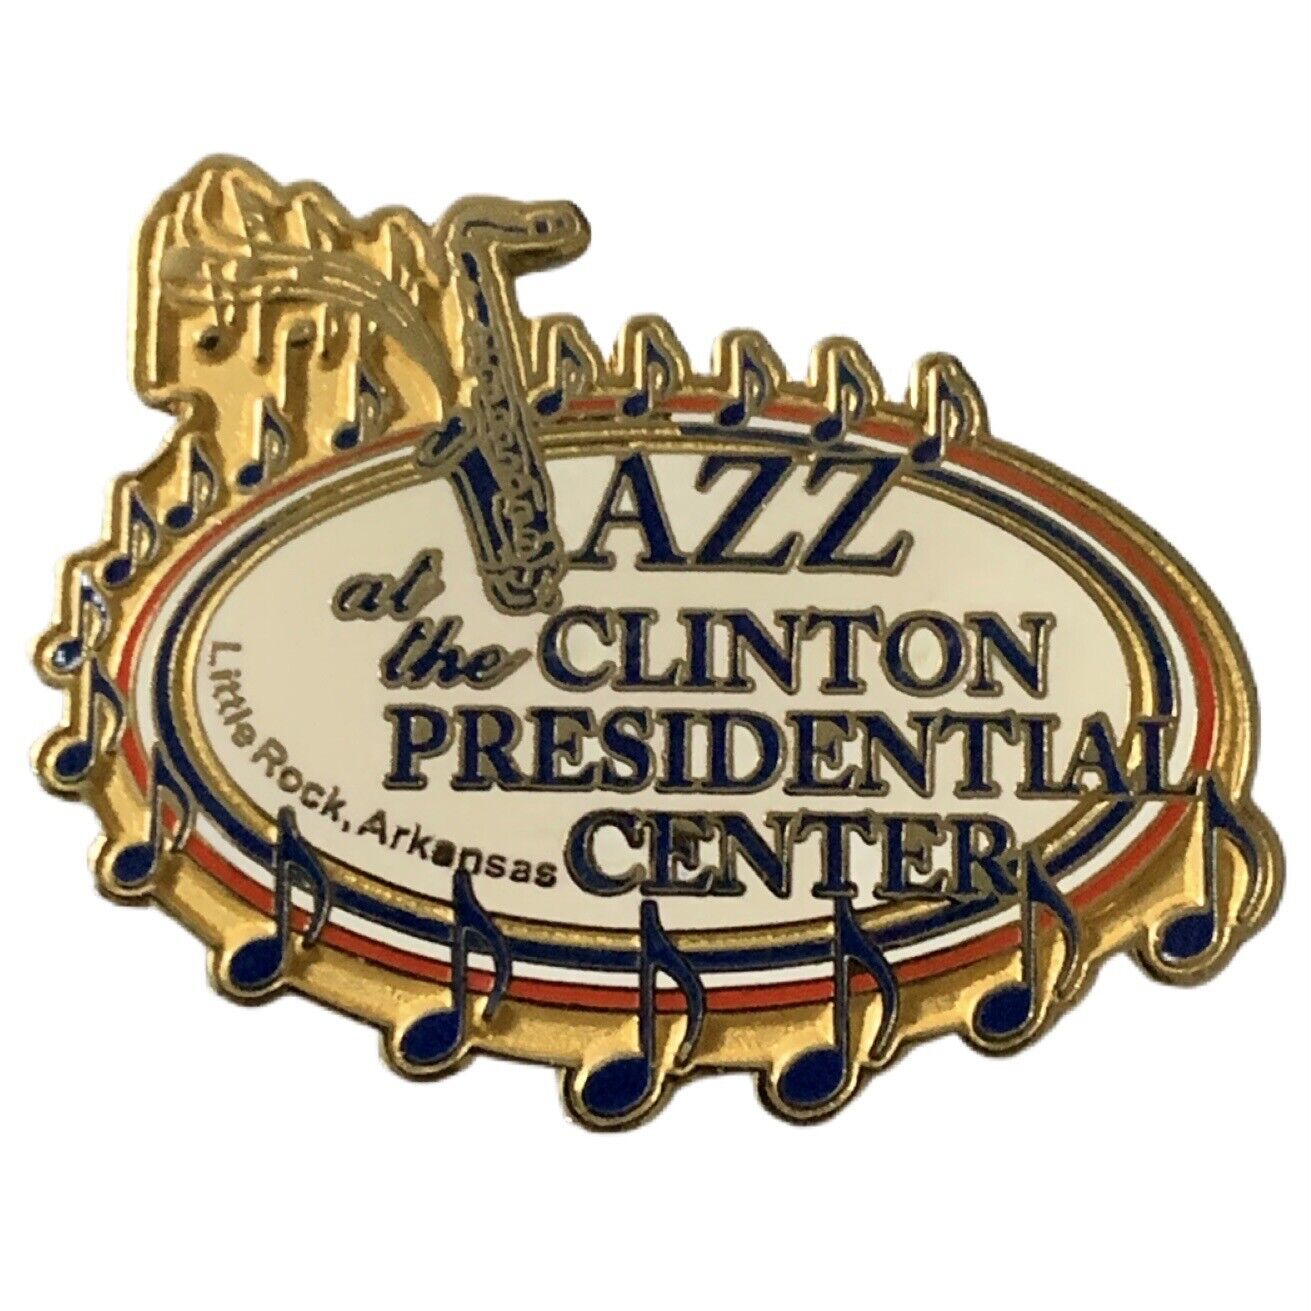 Jazz at the Clinton Presidential Center Little Rock Arkansas Travel Souvenir Pin